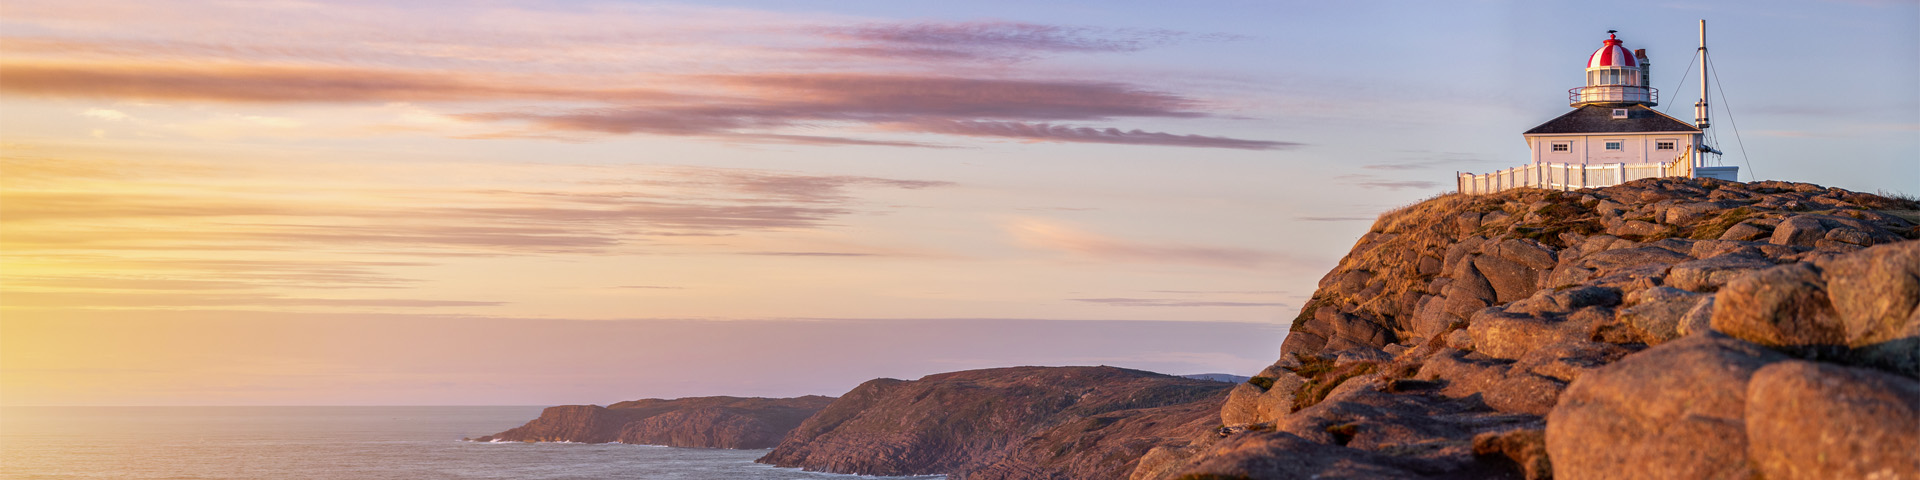 un phare blanc, carré, sur une falaise rocheuse surplombant l'océan sous un lever de soleil coloré